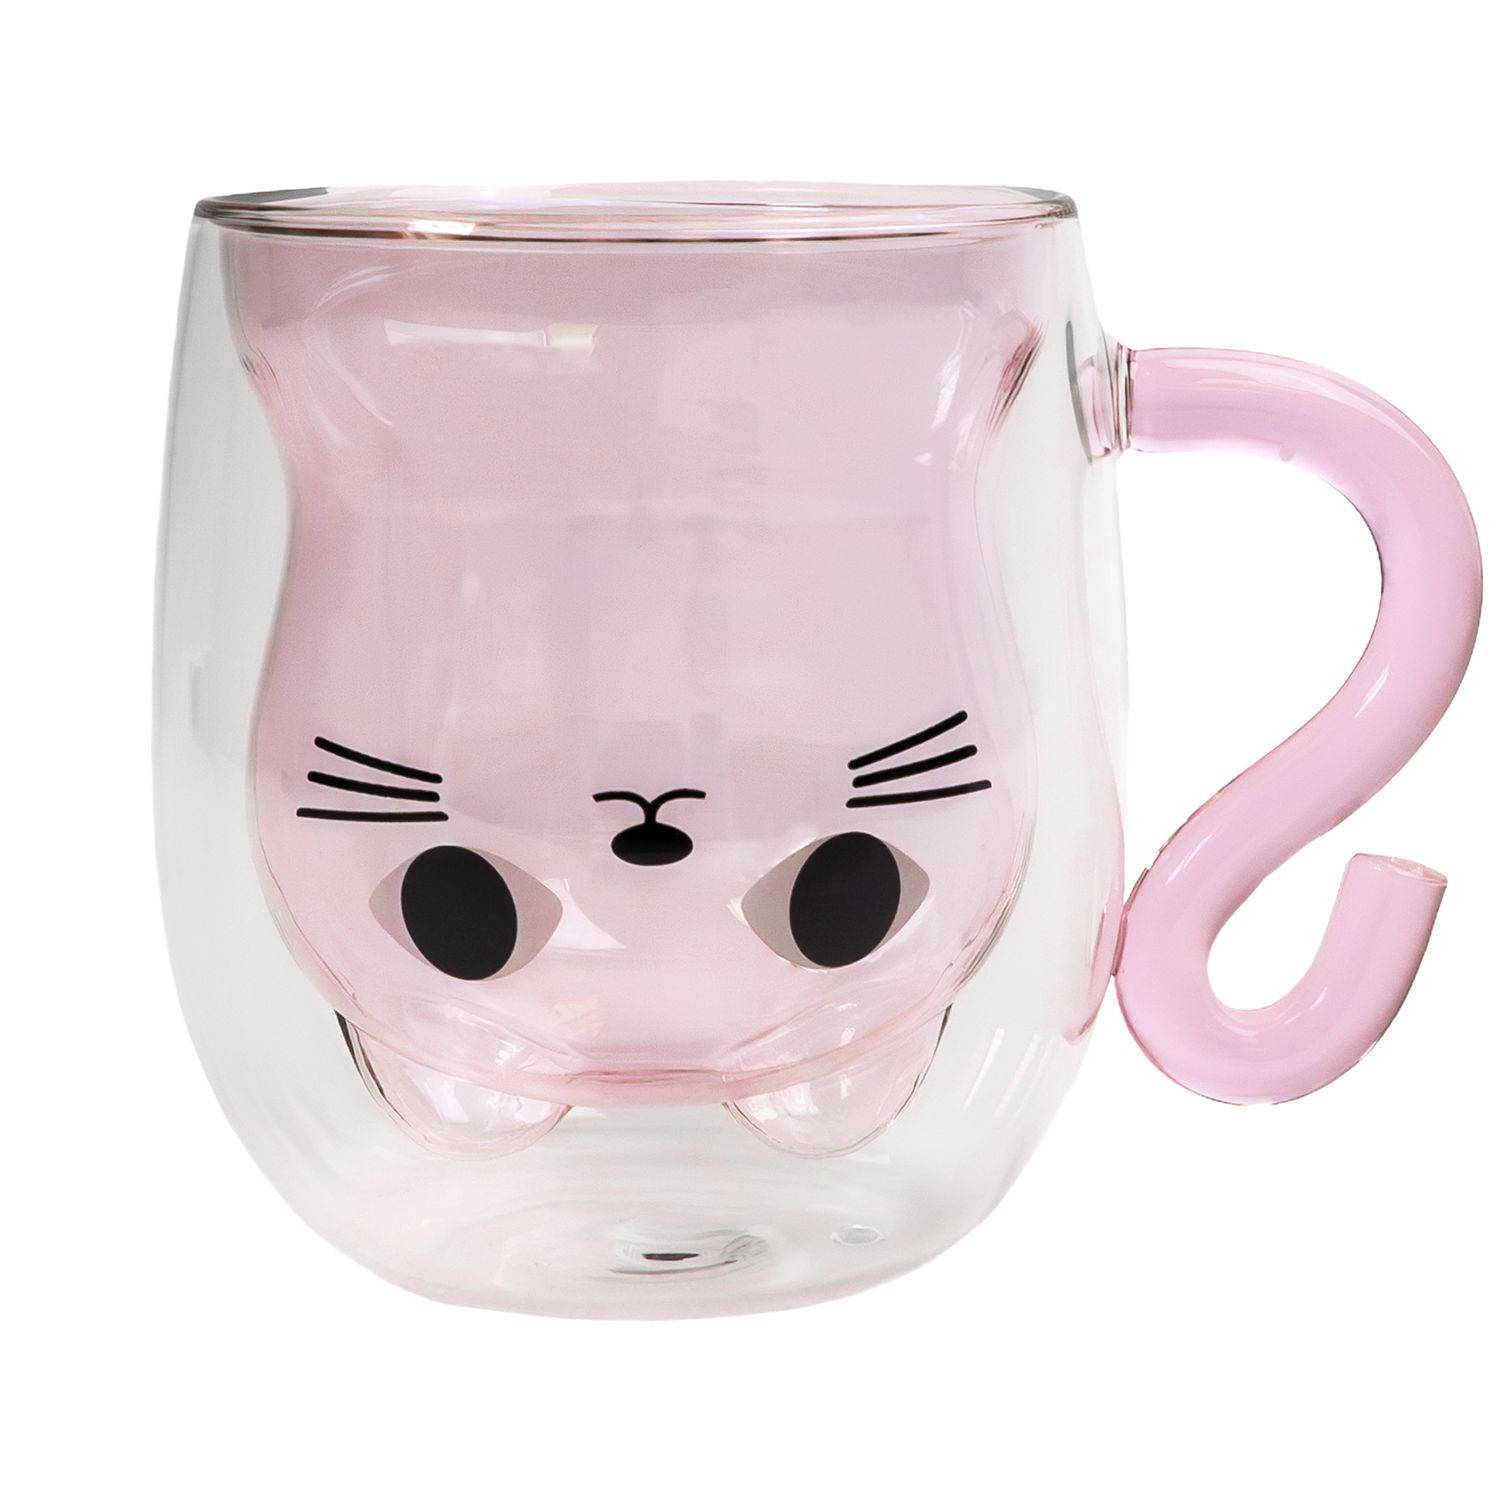 Intirilife thermo thee koffie glas dubbelwandig met kat design in roze - 200ml inhoud - geïsoleerde glazen mok